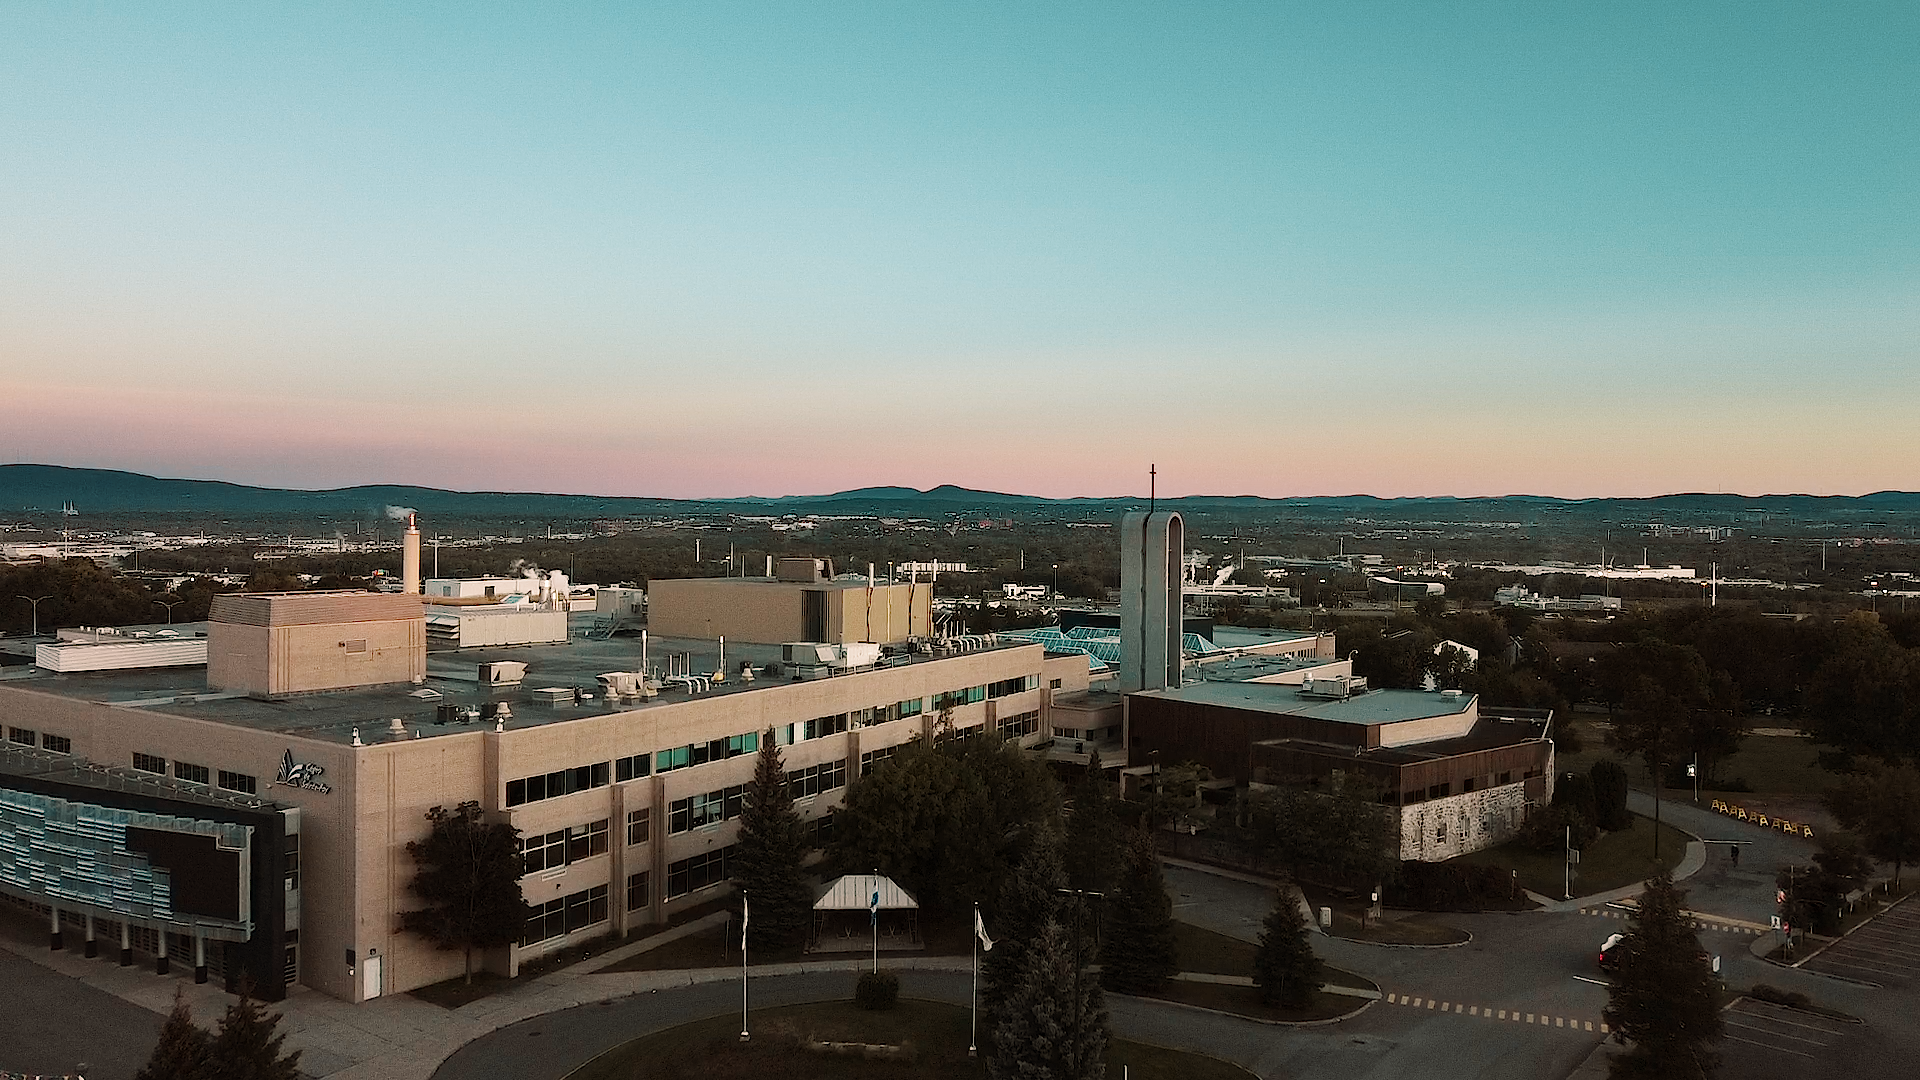 Vue aérienne d’un collège en fin de journée lorsque le soleil se couche. Photo.